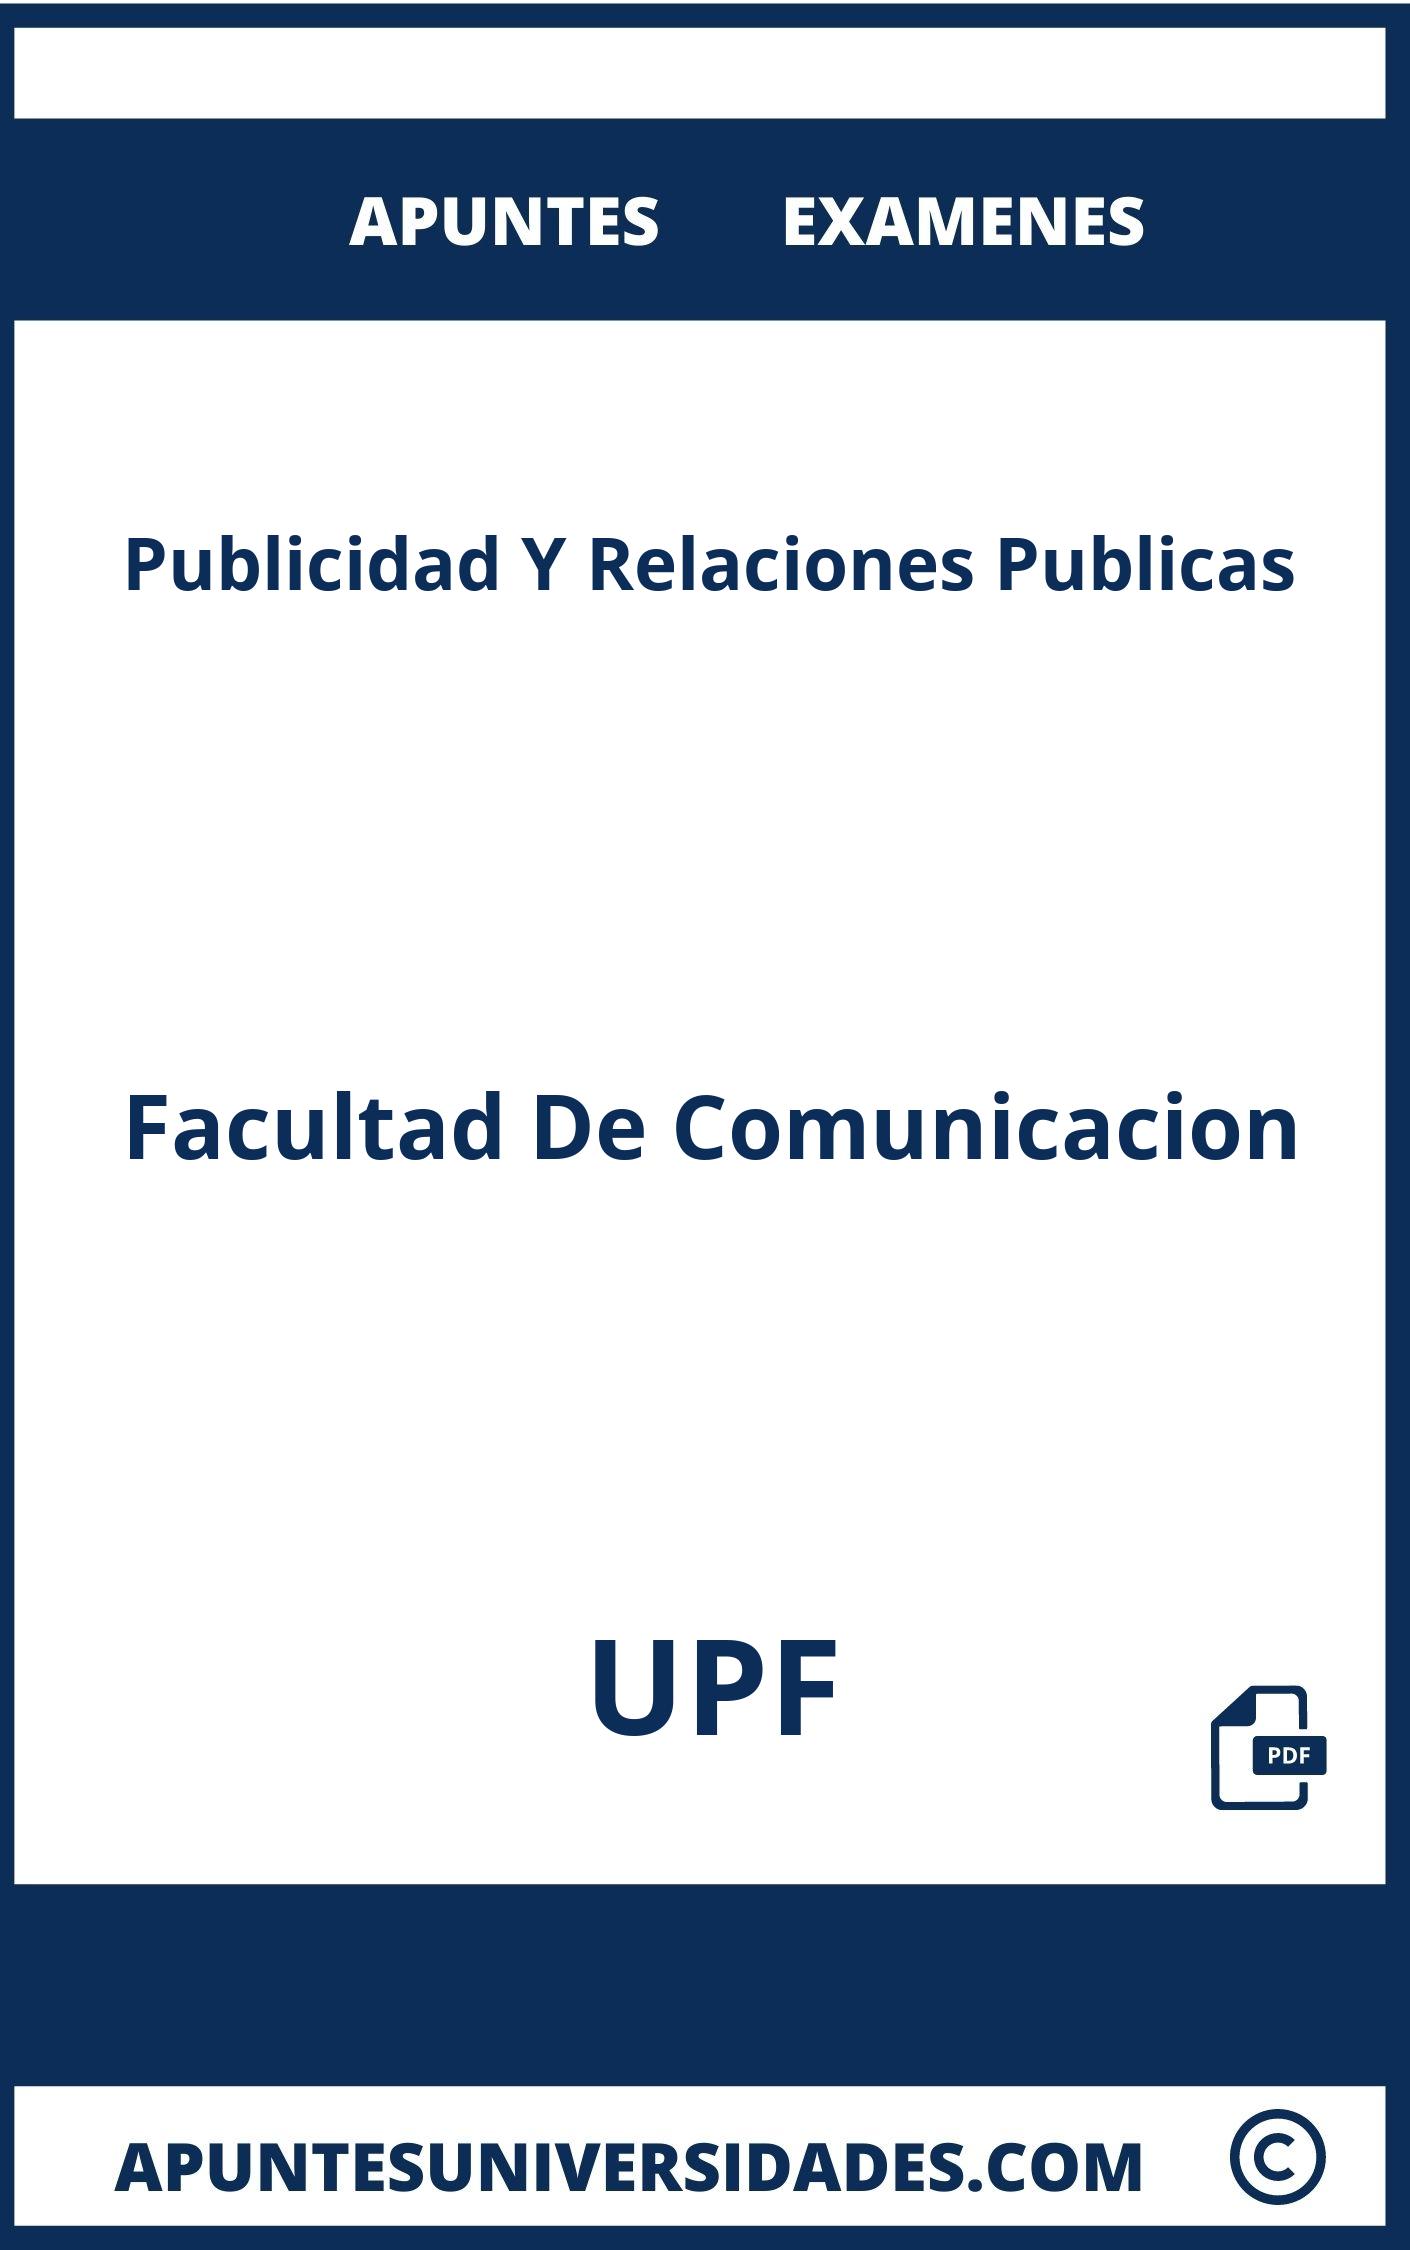 Examenes Apuntes Publicidad Y Relaciones Publicas UPF